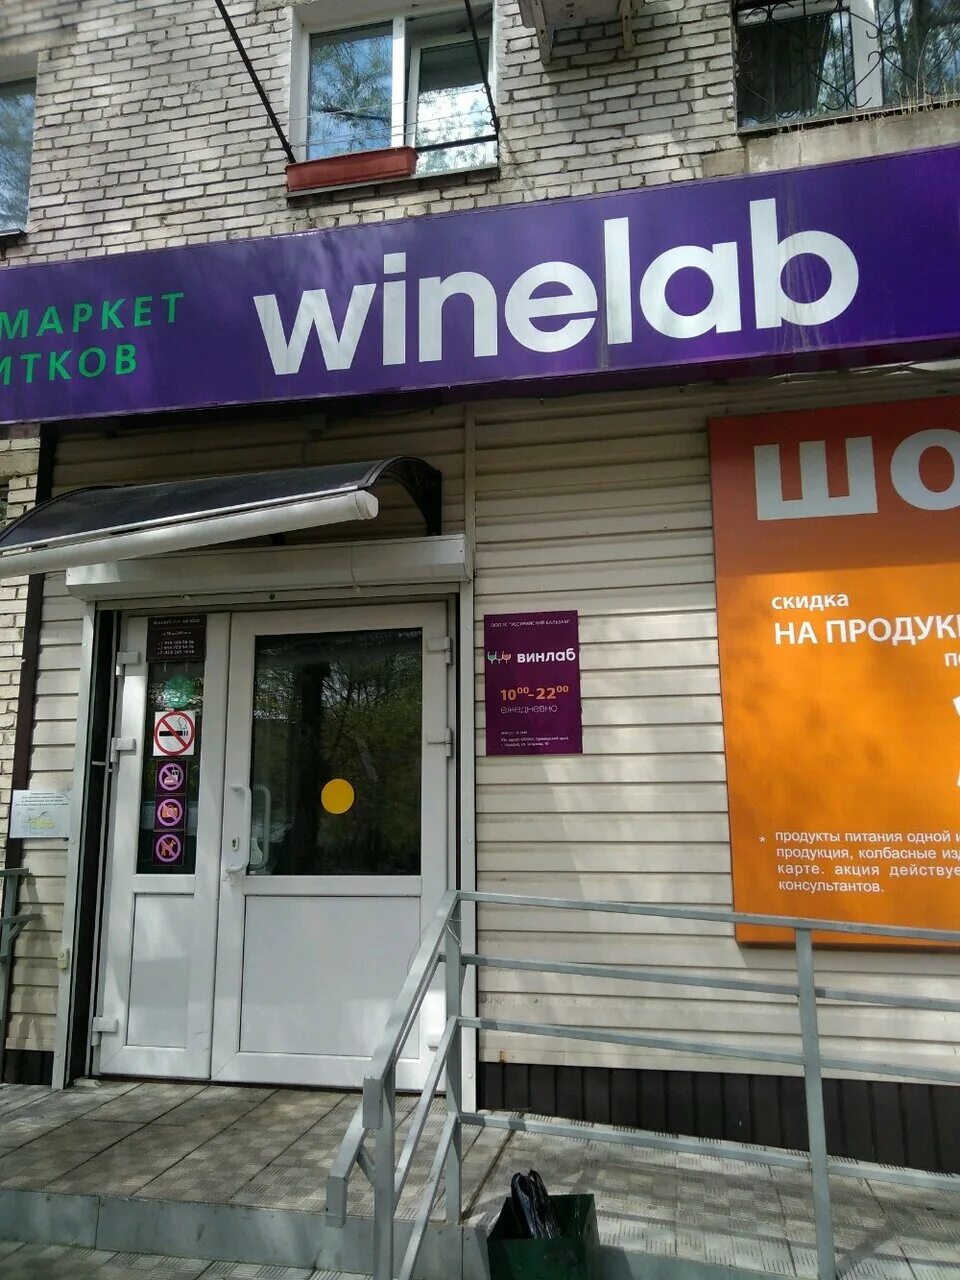 Винлаб. Винлаб магазин. Винлаб Хабаровск. Винлаб лого.